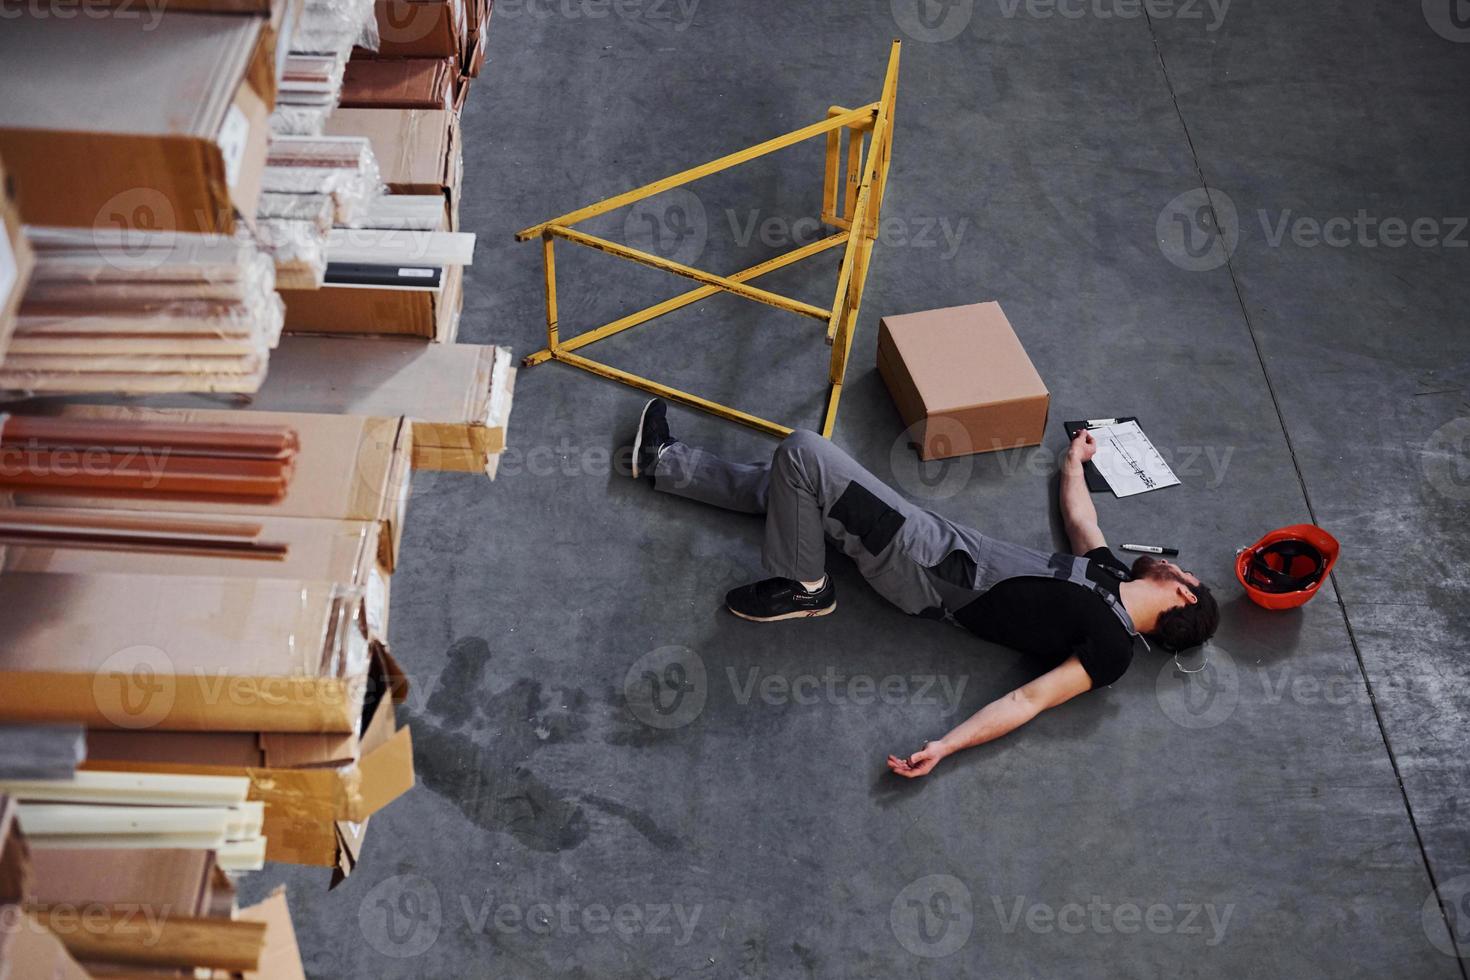 employé d'entrepôt après un accident dans le stockage. homme en uniforme allongé sur le sol photo